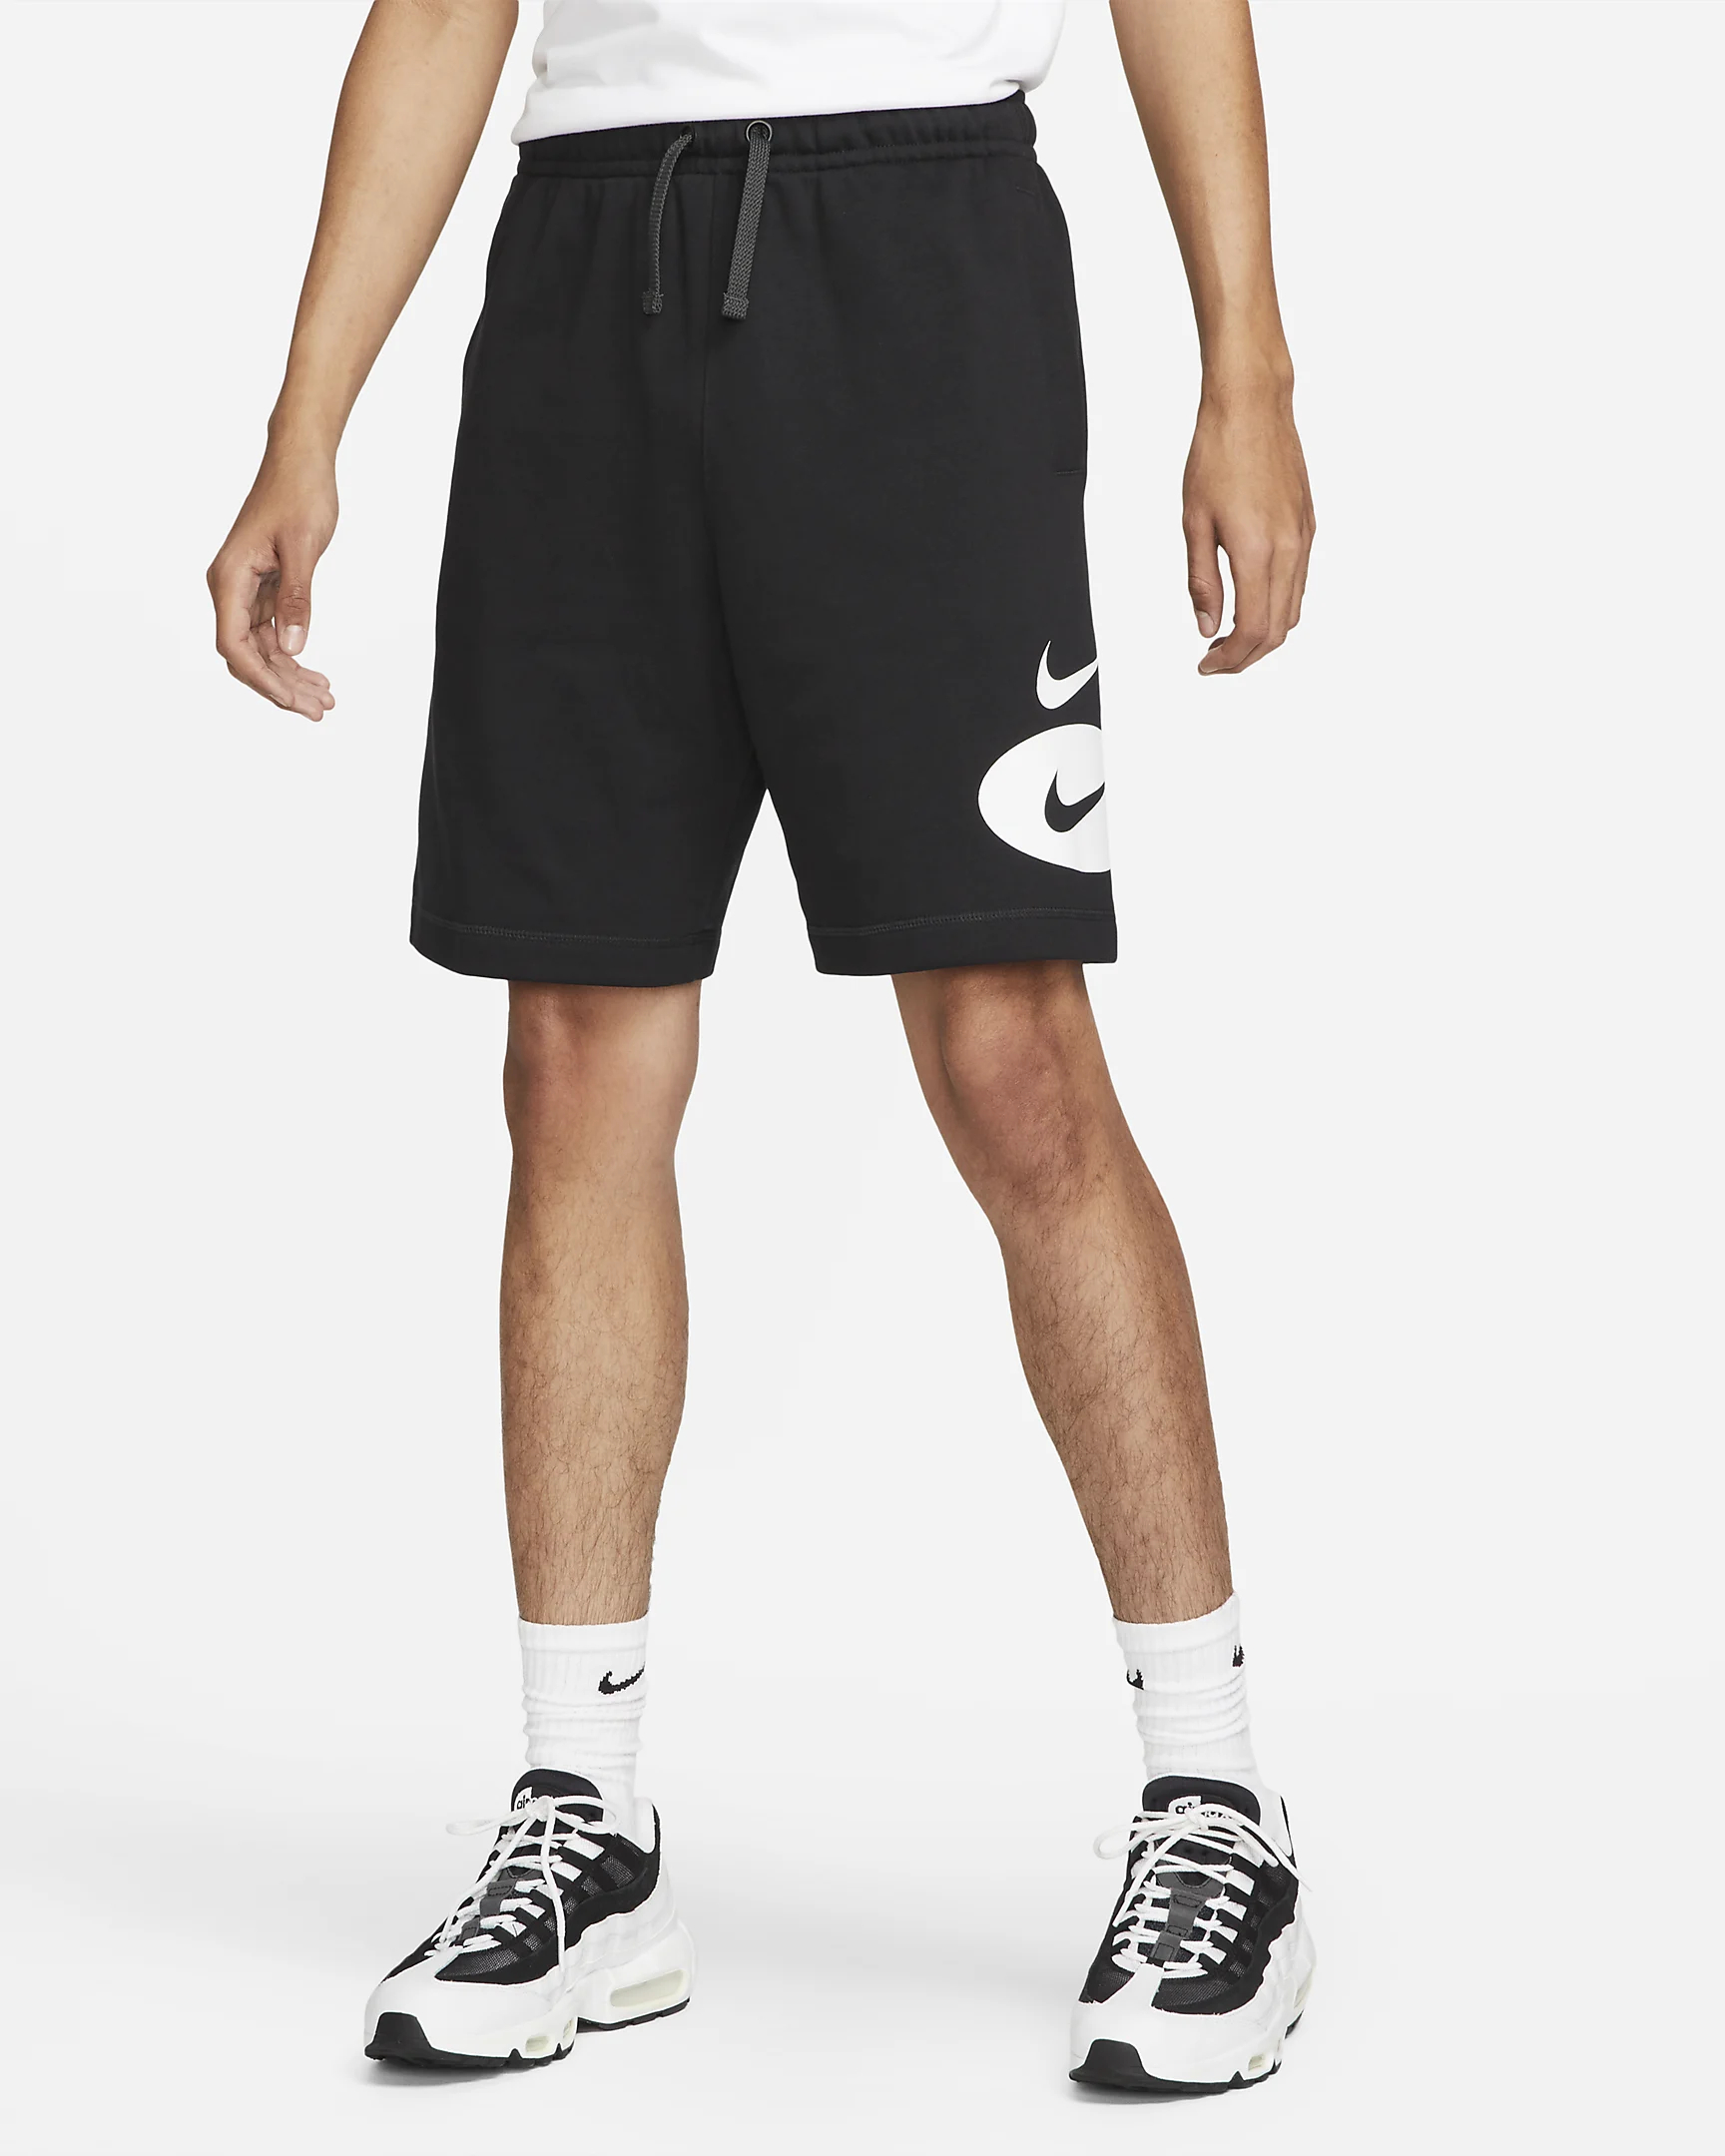 Спортивные шорты мужские Nike Nsw Sl Ft Short, DM5487-010, размер S